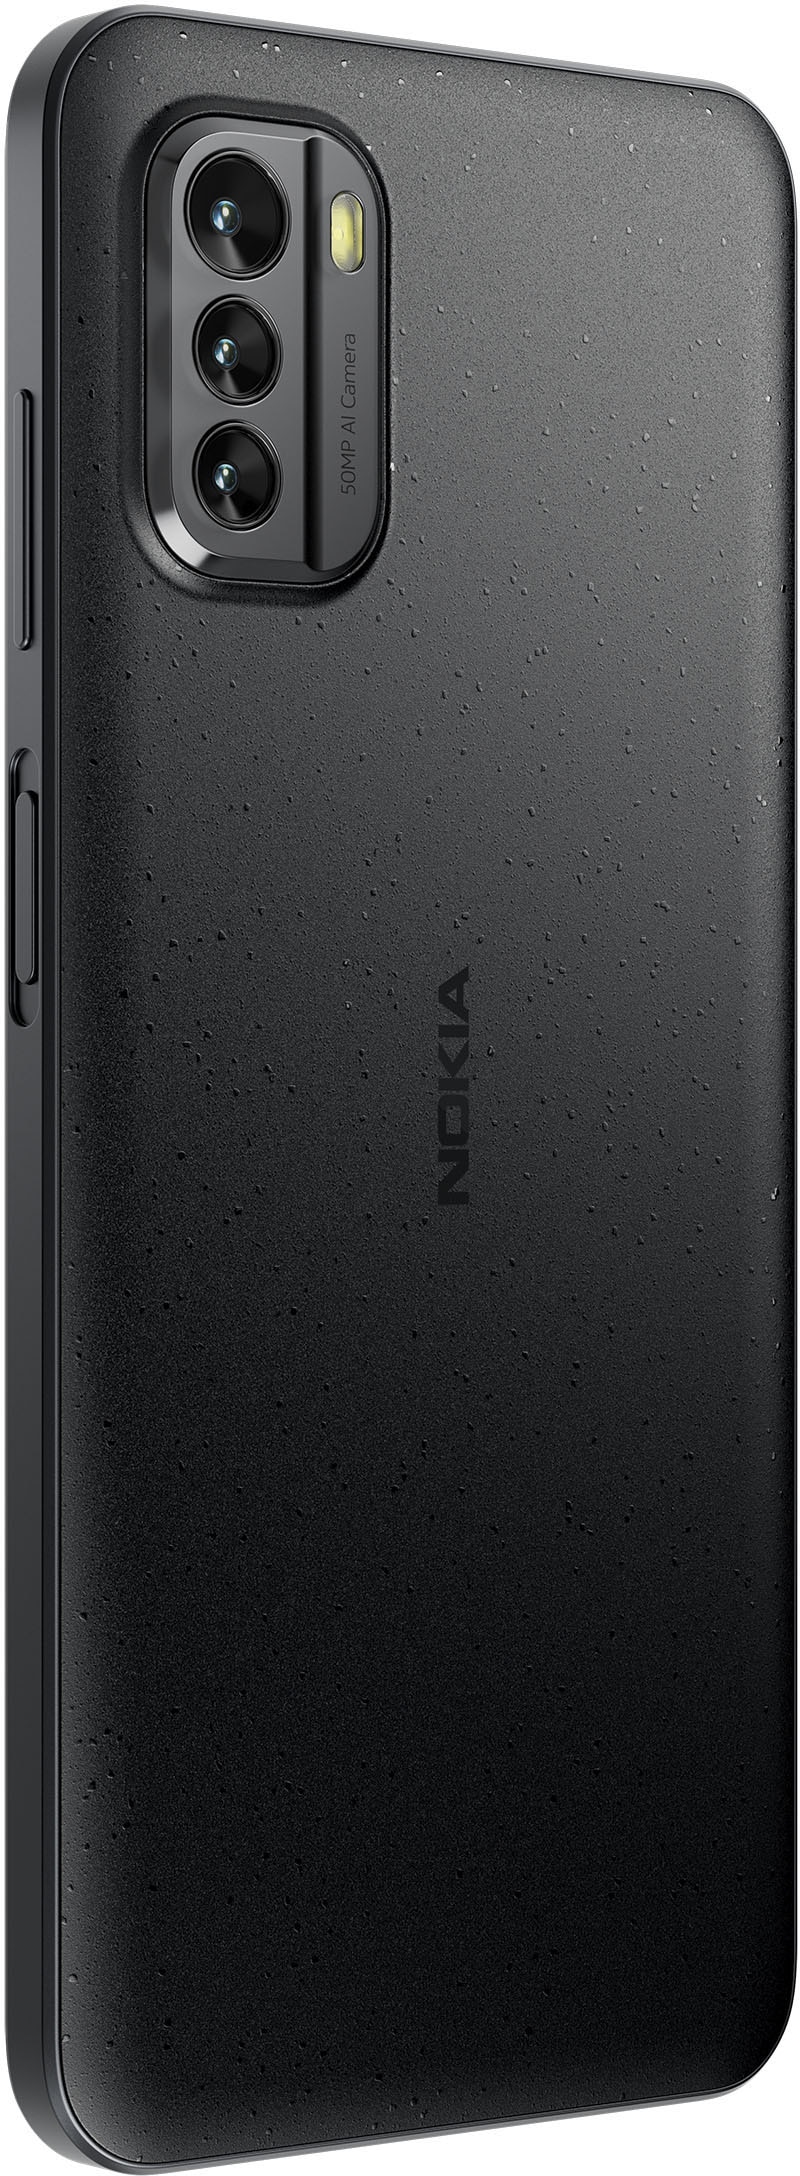 Nokia Smartphone »Prokids Phone – G60«, Pure Black, 16,71 cm/6,58 Zoll, 128  GB Speicherplatz, 50 MP Kamera jetzt bestellen bei OTTO